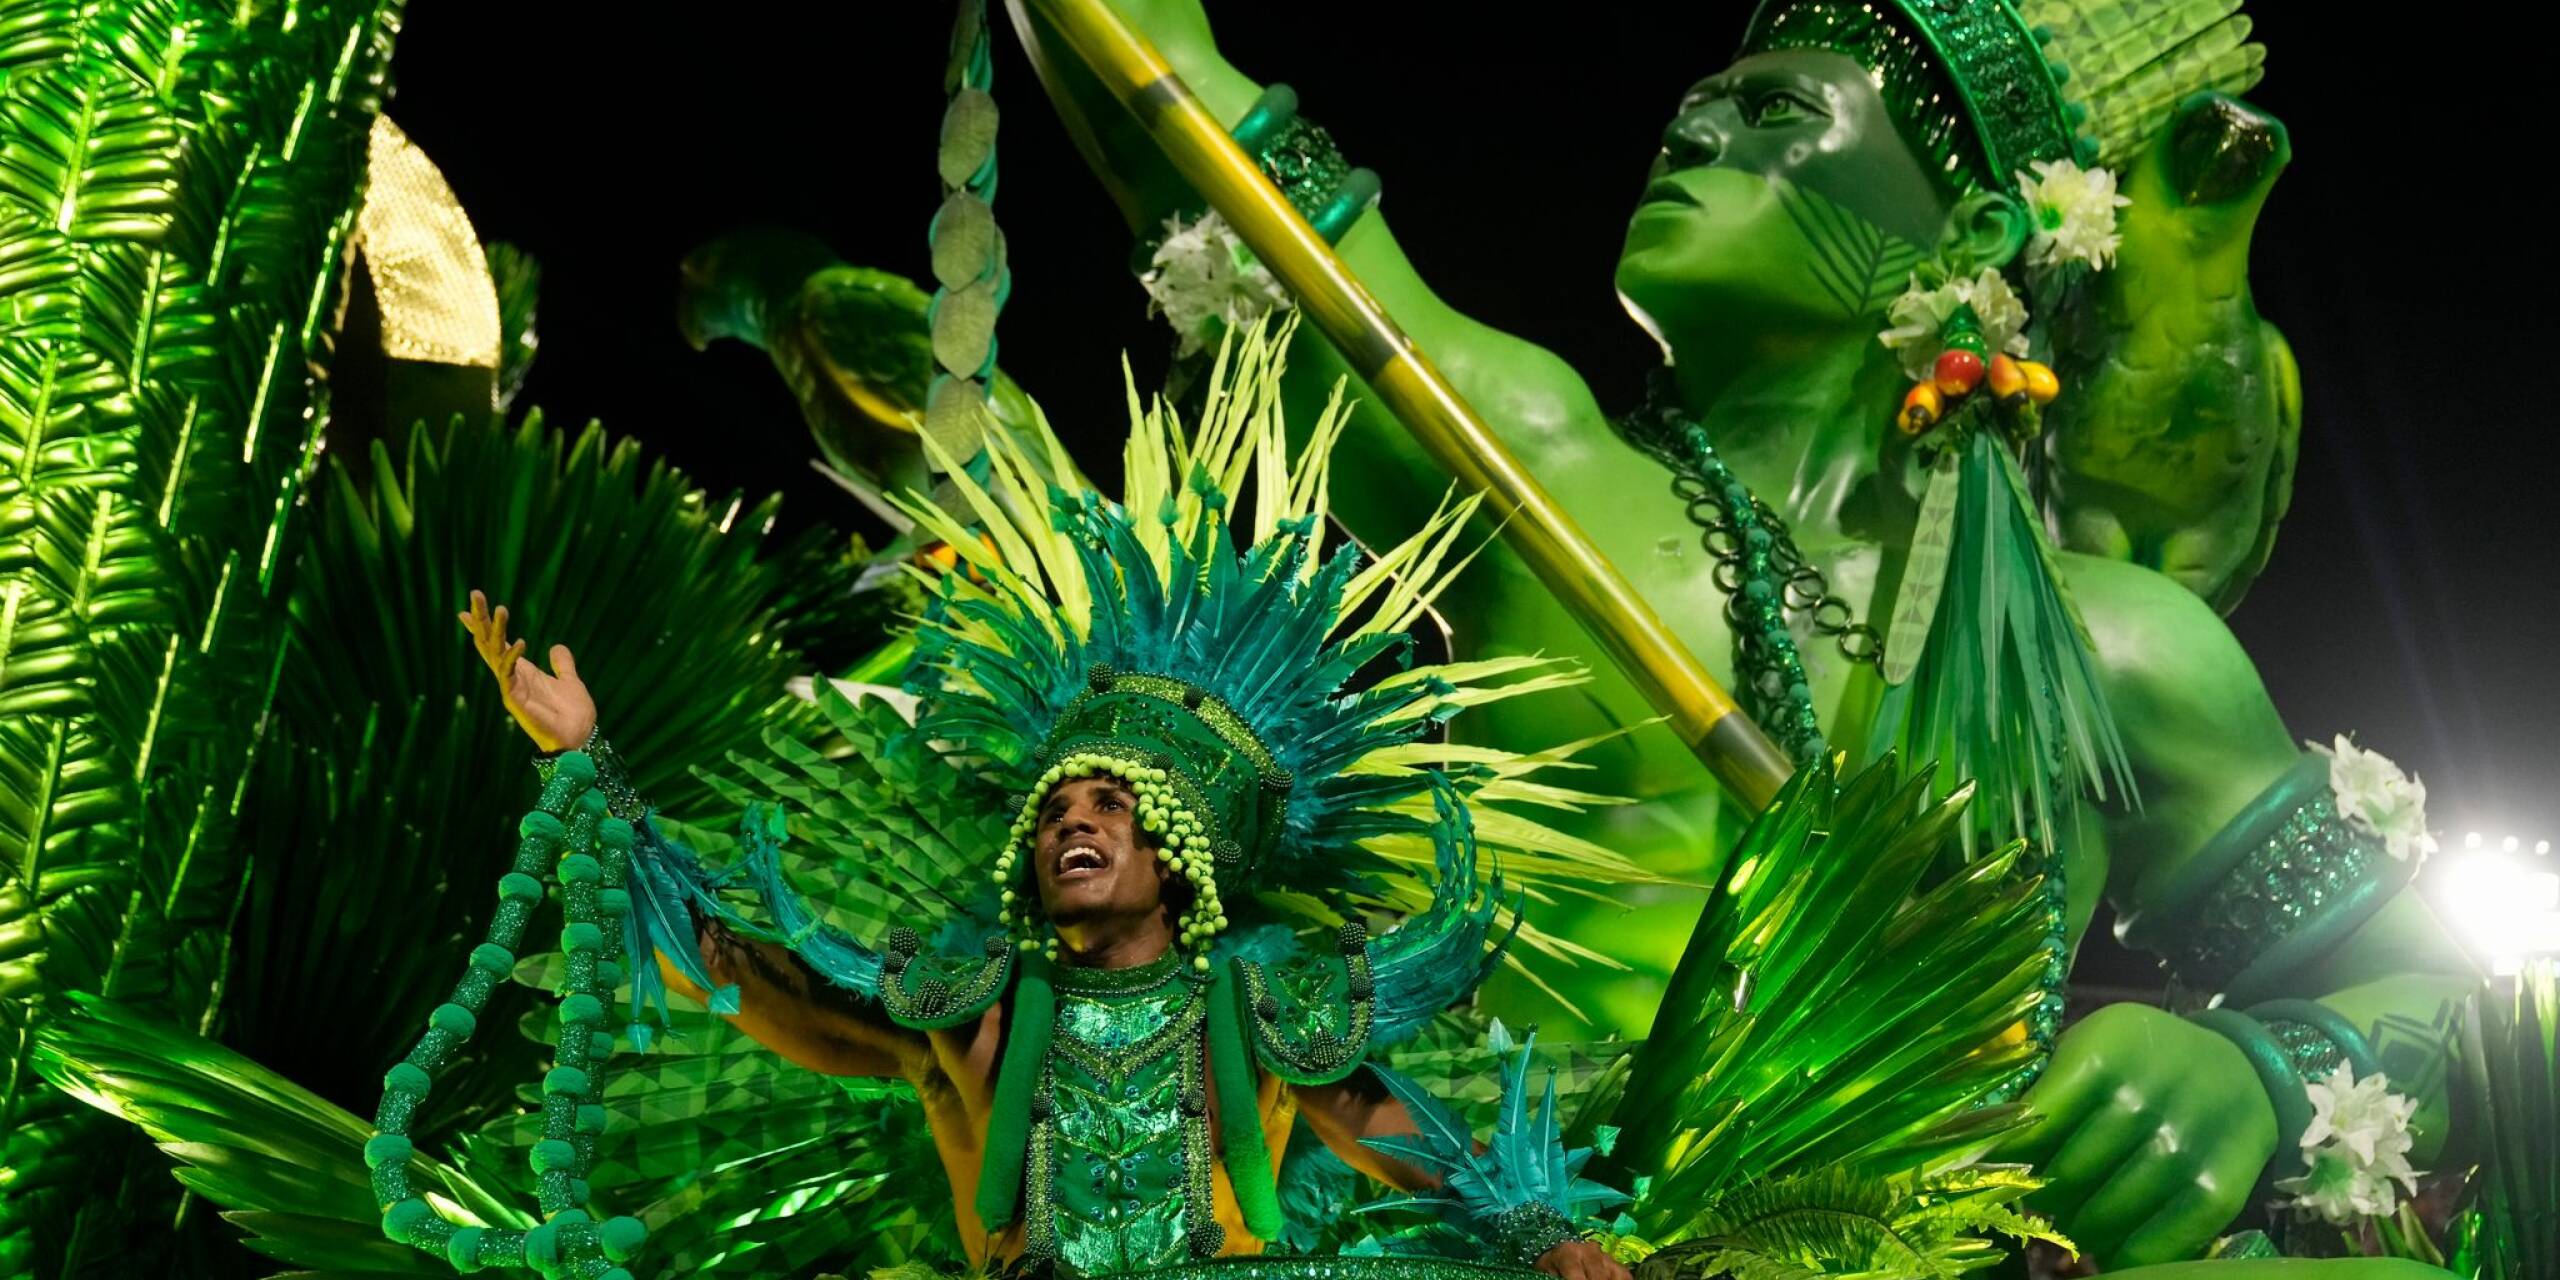 Zum Abschluss der weltberühmten Umzüge im Sambodrom in Rio de Janeiro haben die zwölf Top-Sambaschulen die Zuschauer begeistert. Dabei wurde an Persönlichkeiten, kulturelle Traditionen und Geschichten der afrobrasilianischen Bevölkerung erinnert.